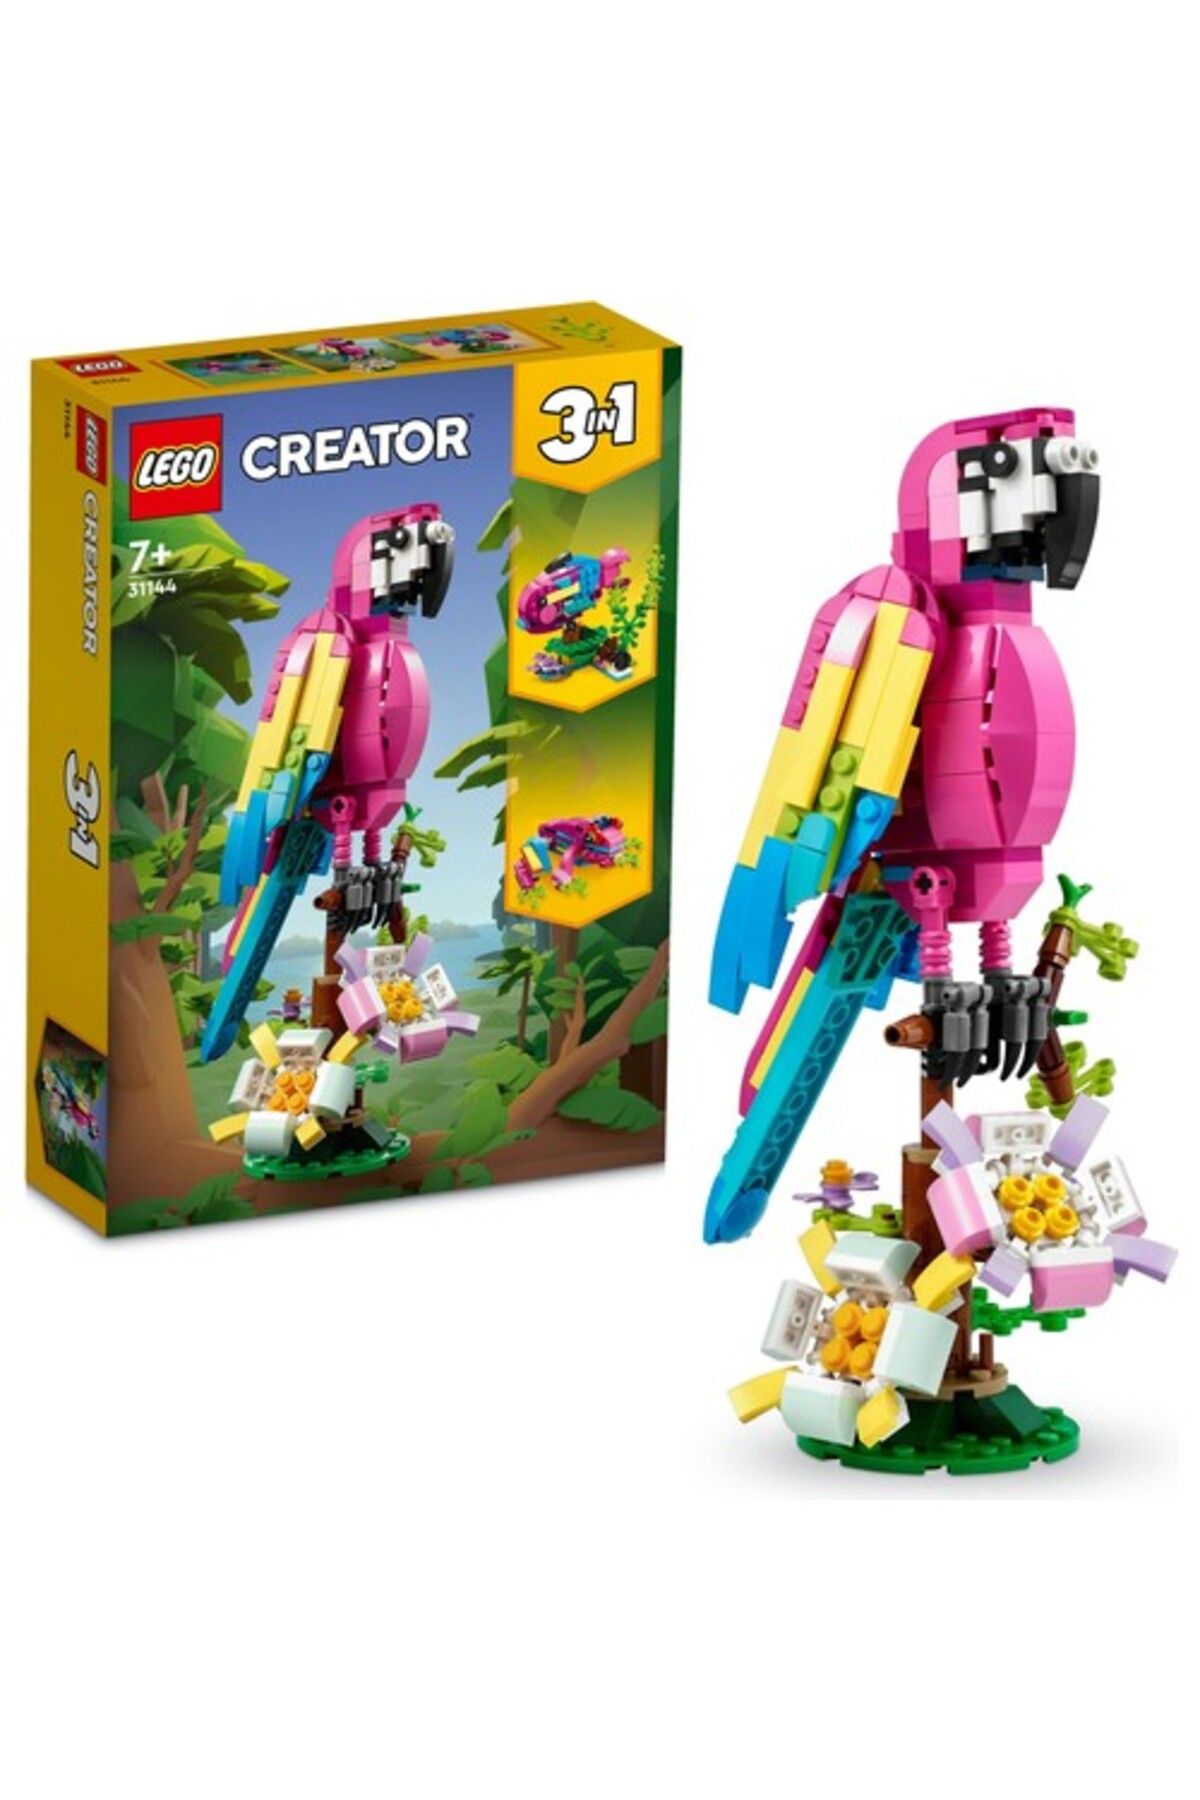 LEGO ® Creator Egzotik Pembe Papağan 31144 - 7 Yaş ve Üzeri Çocuklar Için Papağan, Balık ve Kurbağa M